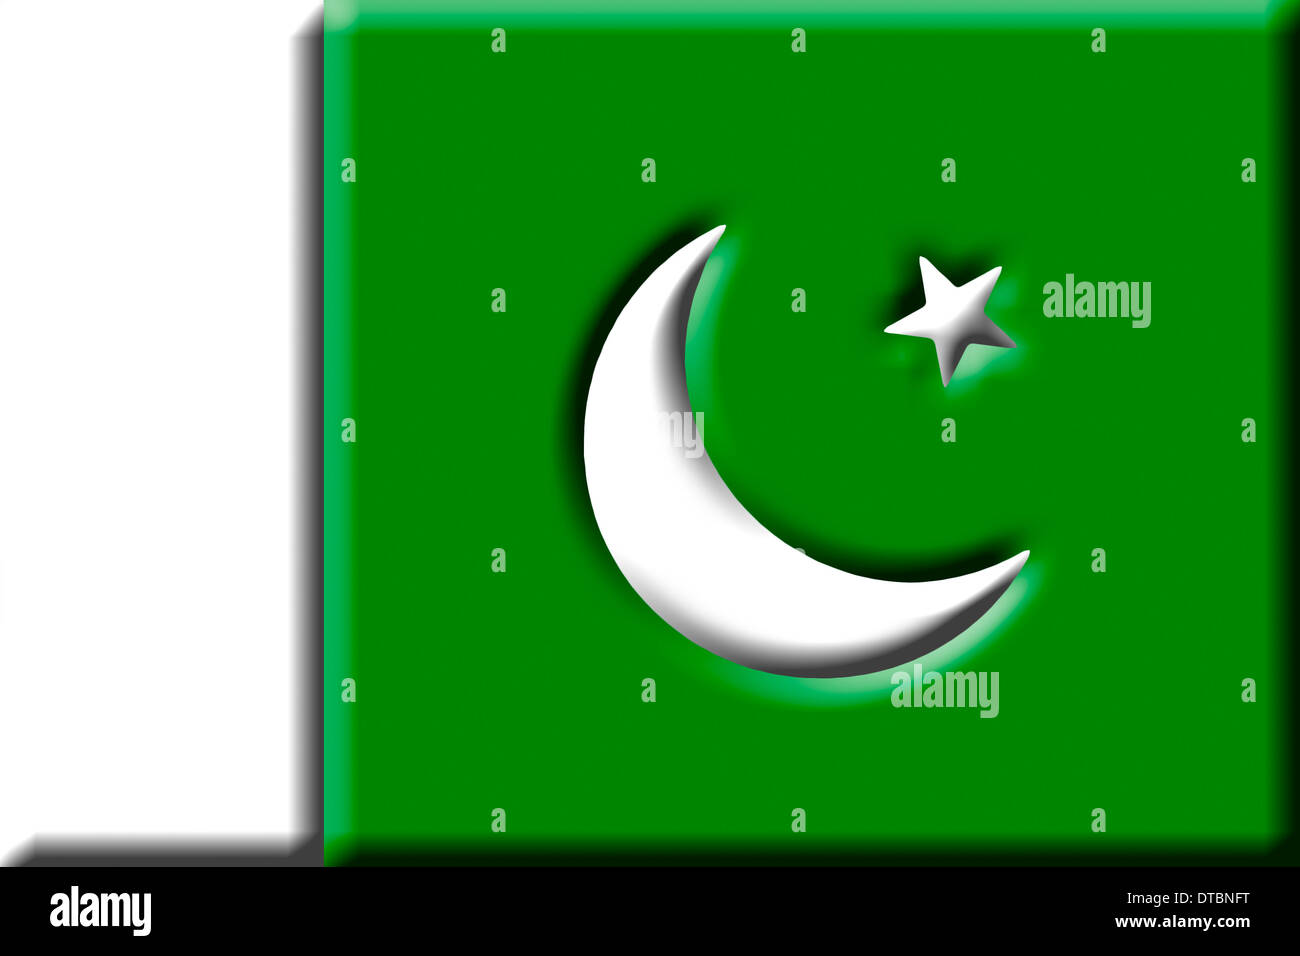 République islamique du Pakistan - drapeau national. Banque D'Images